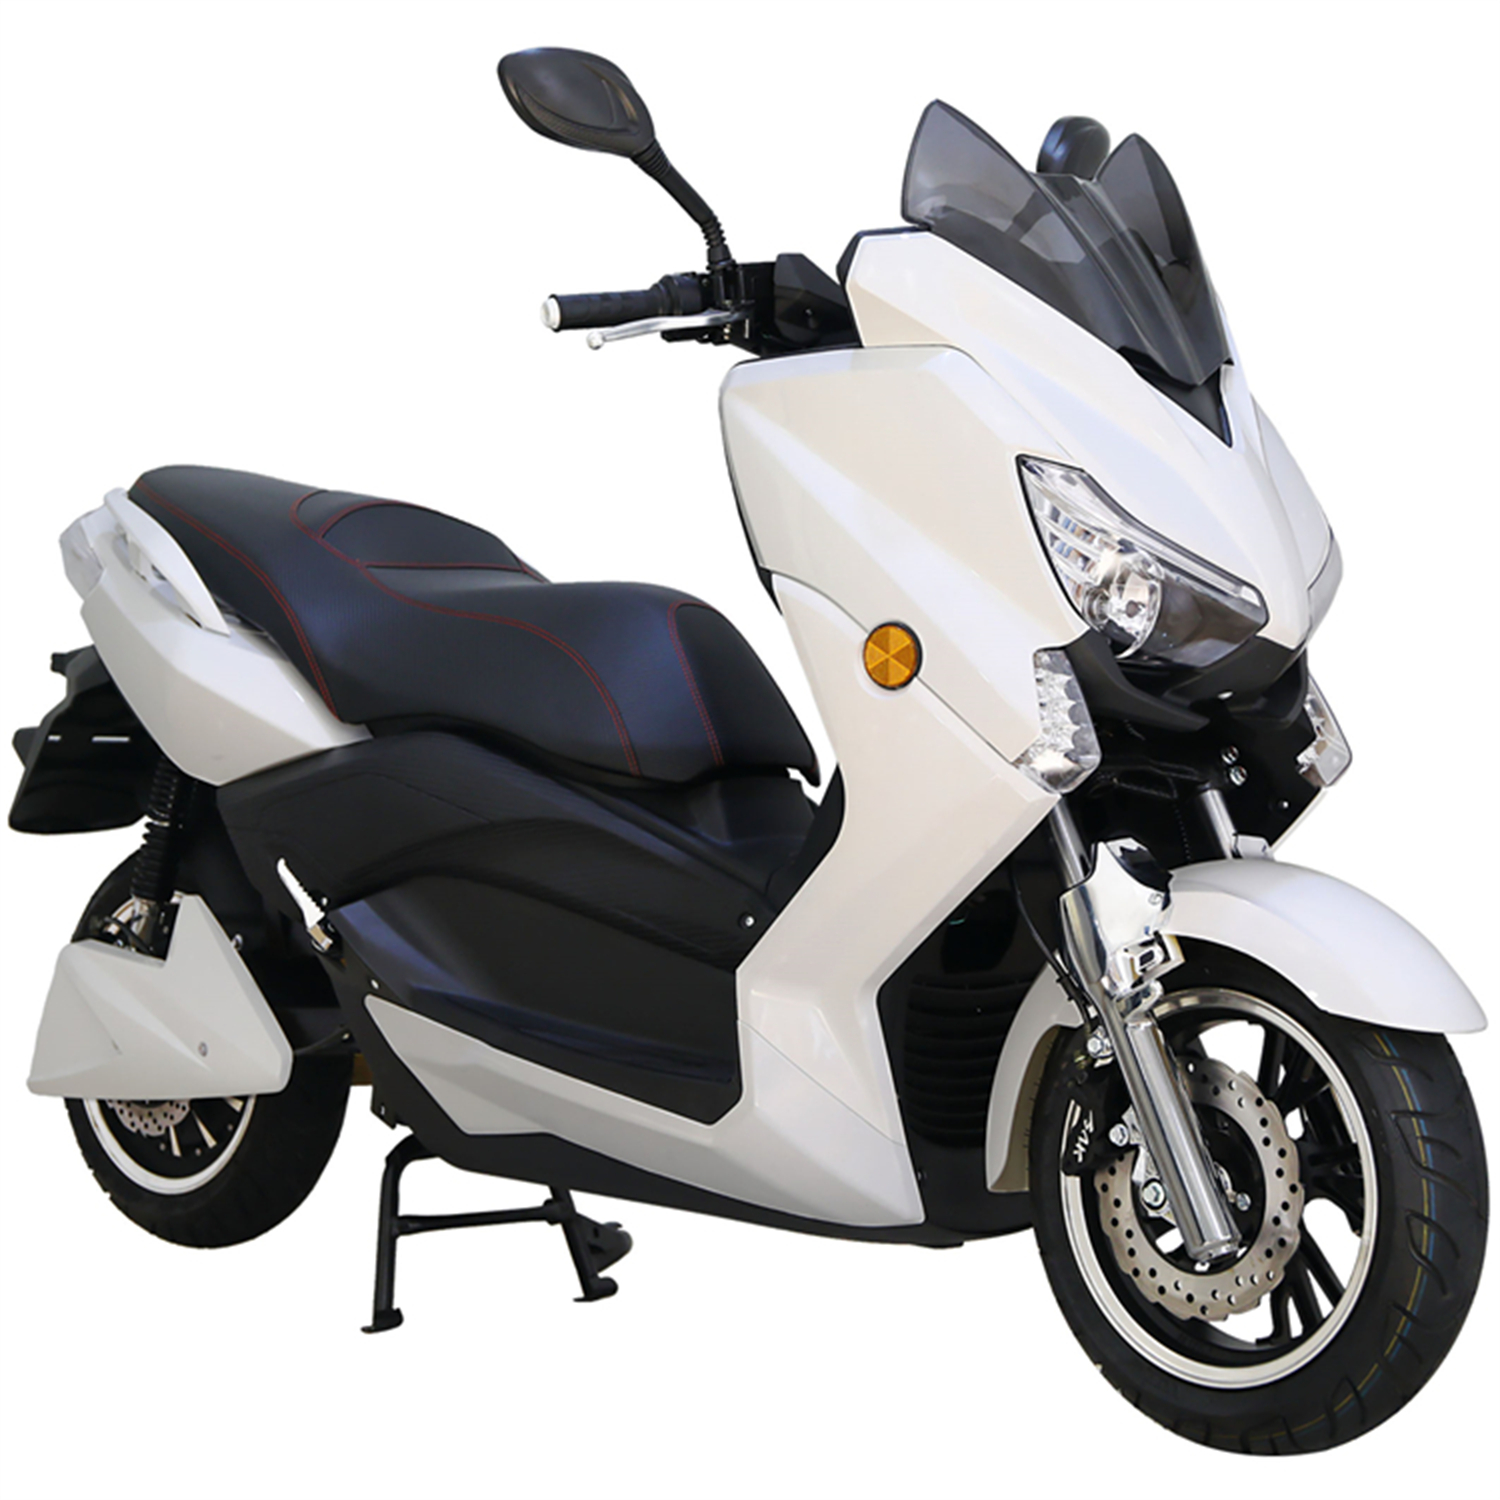 Motocykl elektryczny 72V Titan-8 zasilany akumulatorem dla mężczyzn